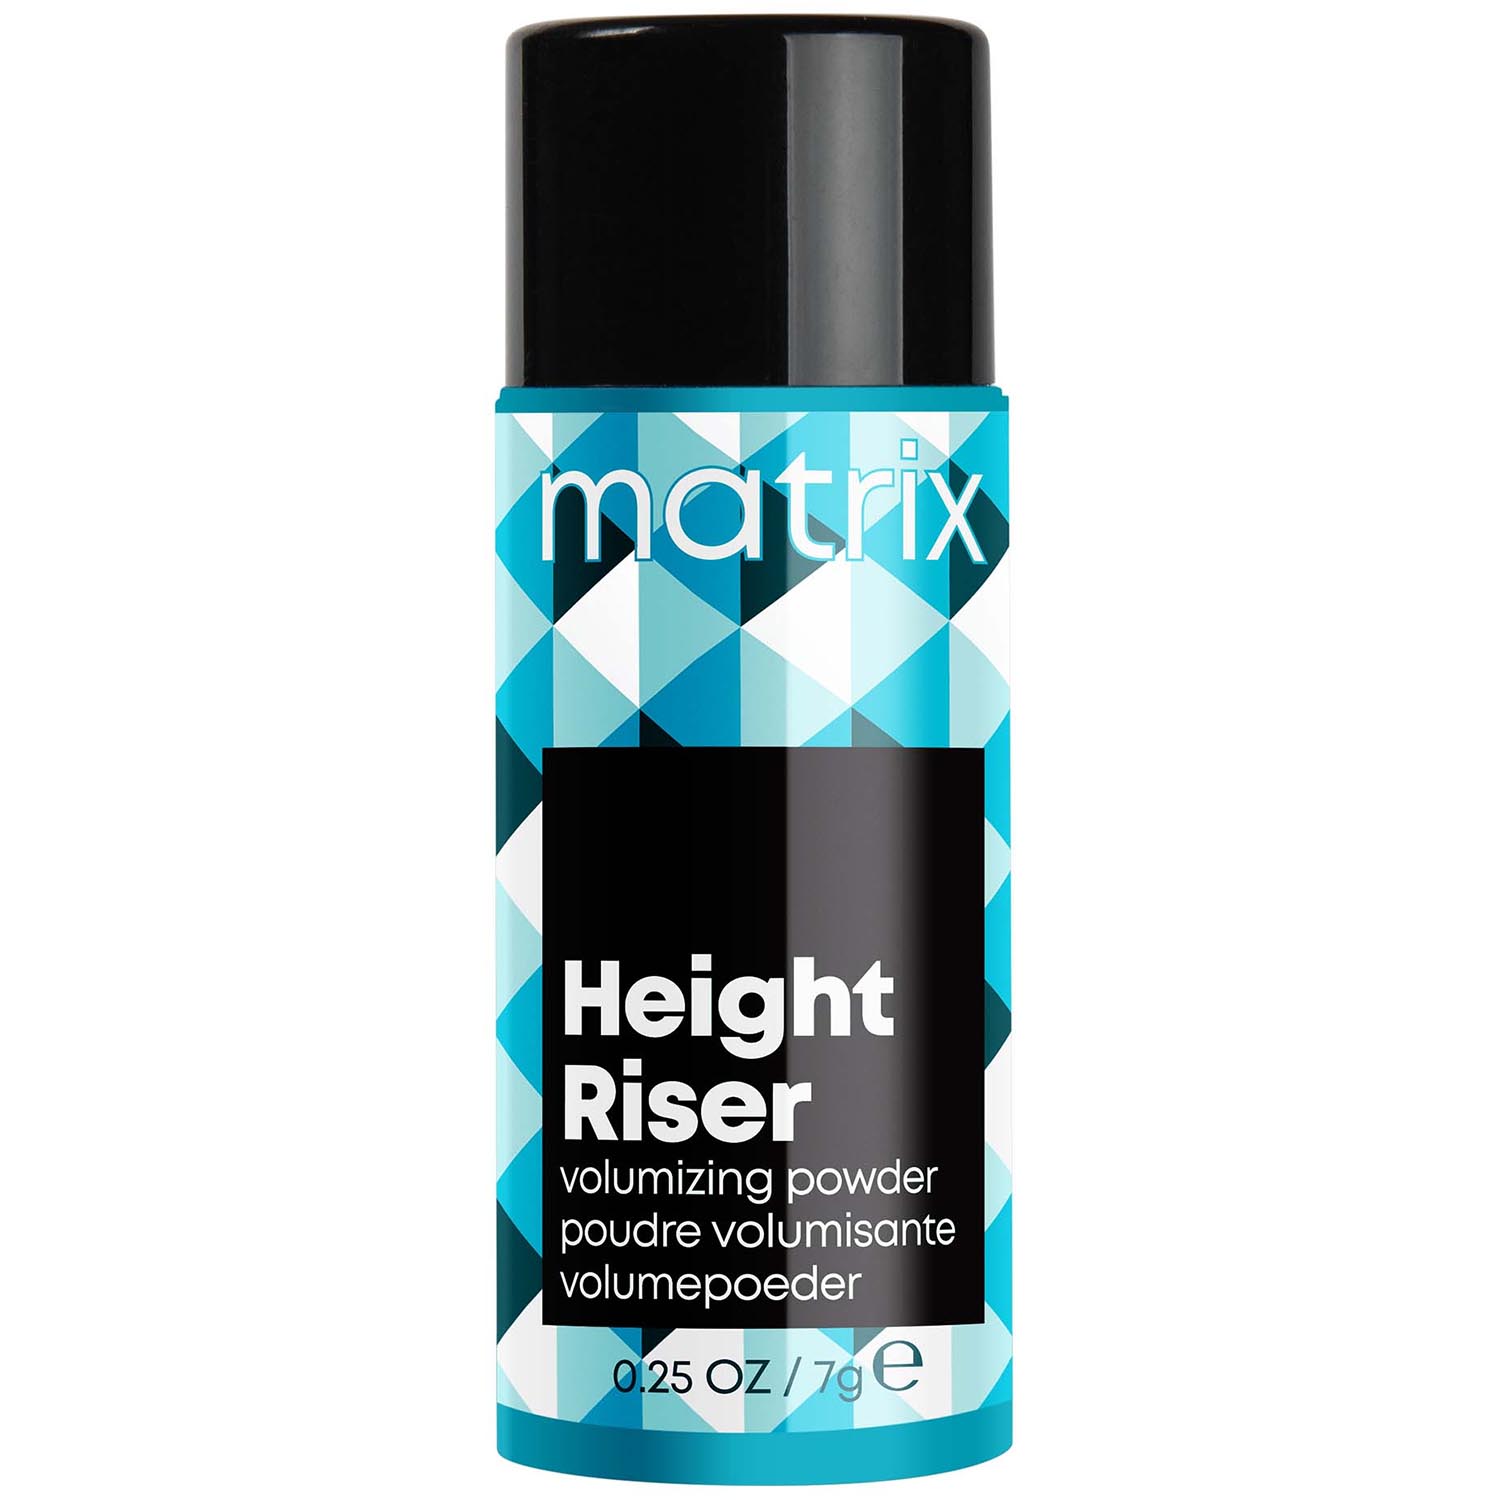 Matrix Профессиональная пудра Height Riser для прикорневого объема, 7 г (Matrix, Стайлинг) пудра для волос gis спрей пудра для объема волос жидкая сильной фиксации